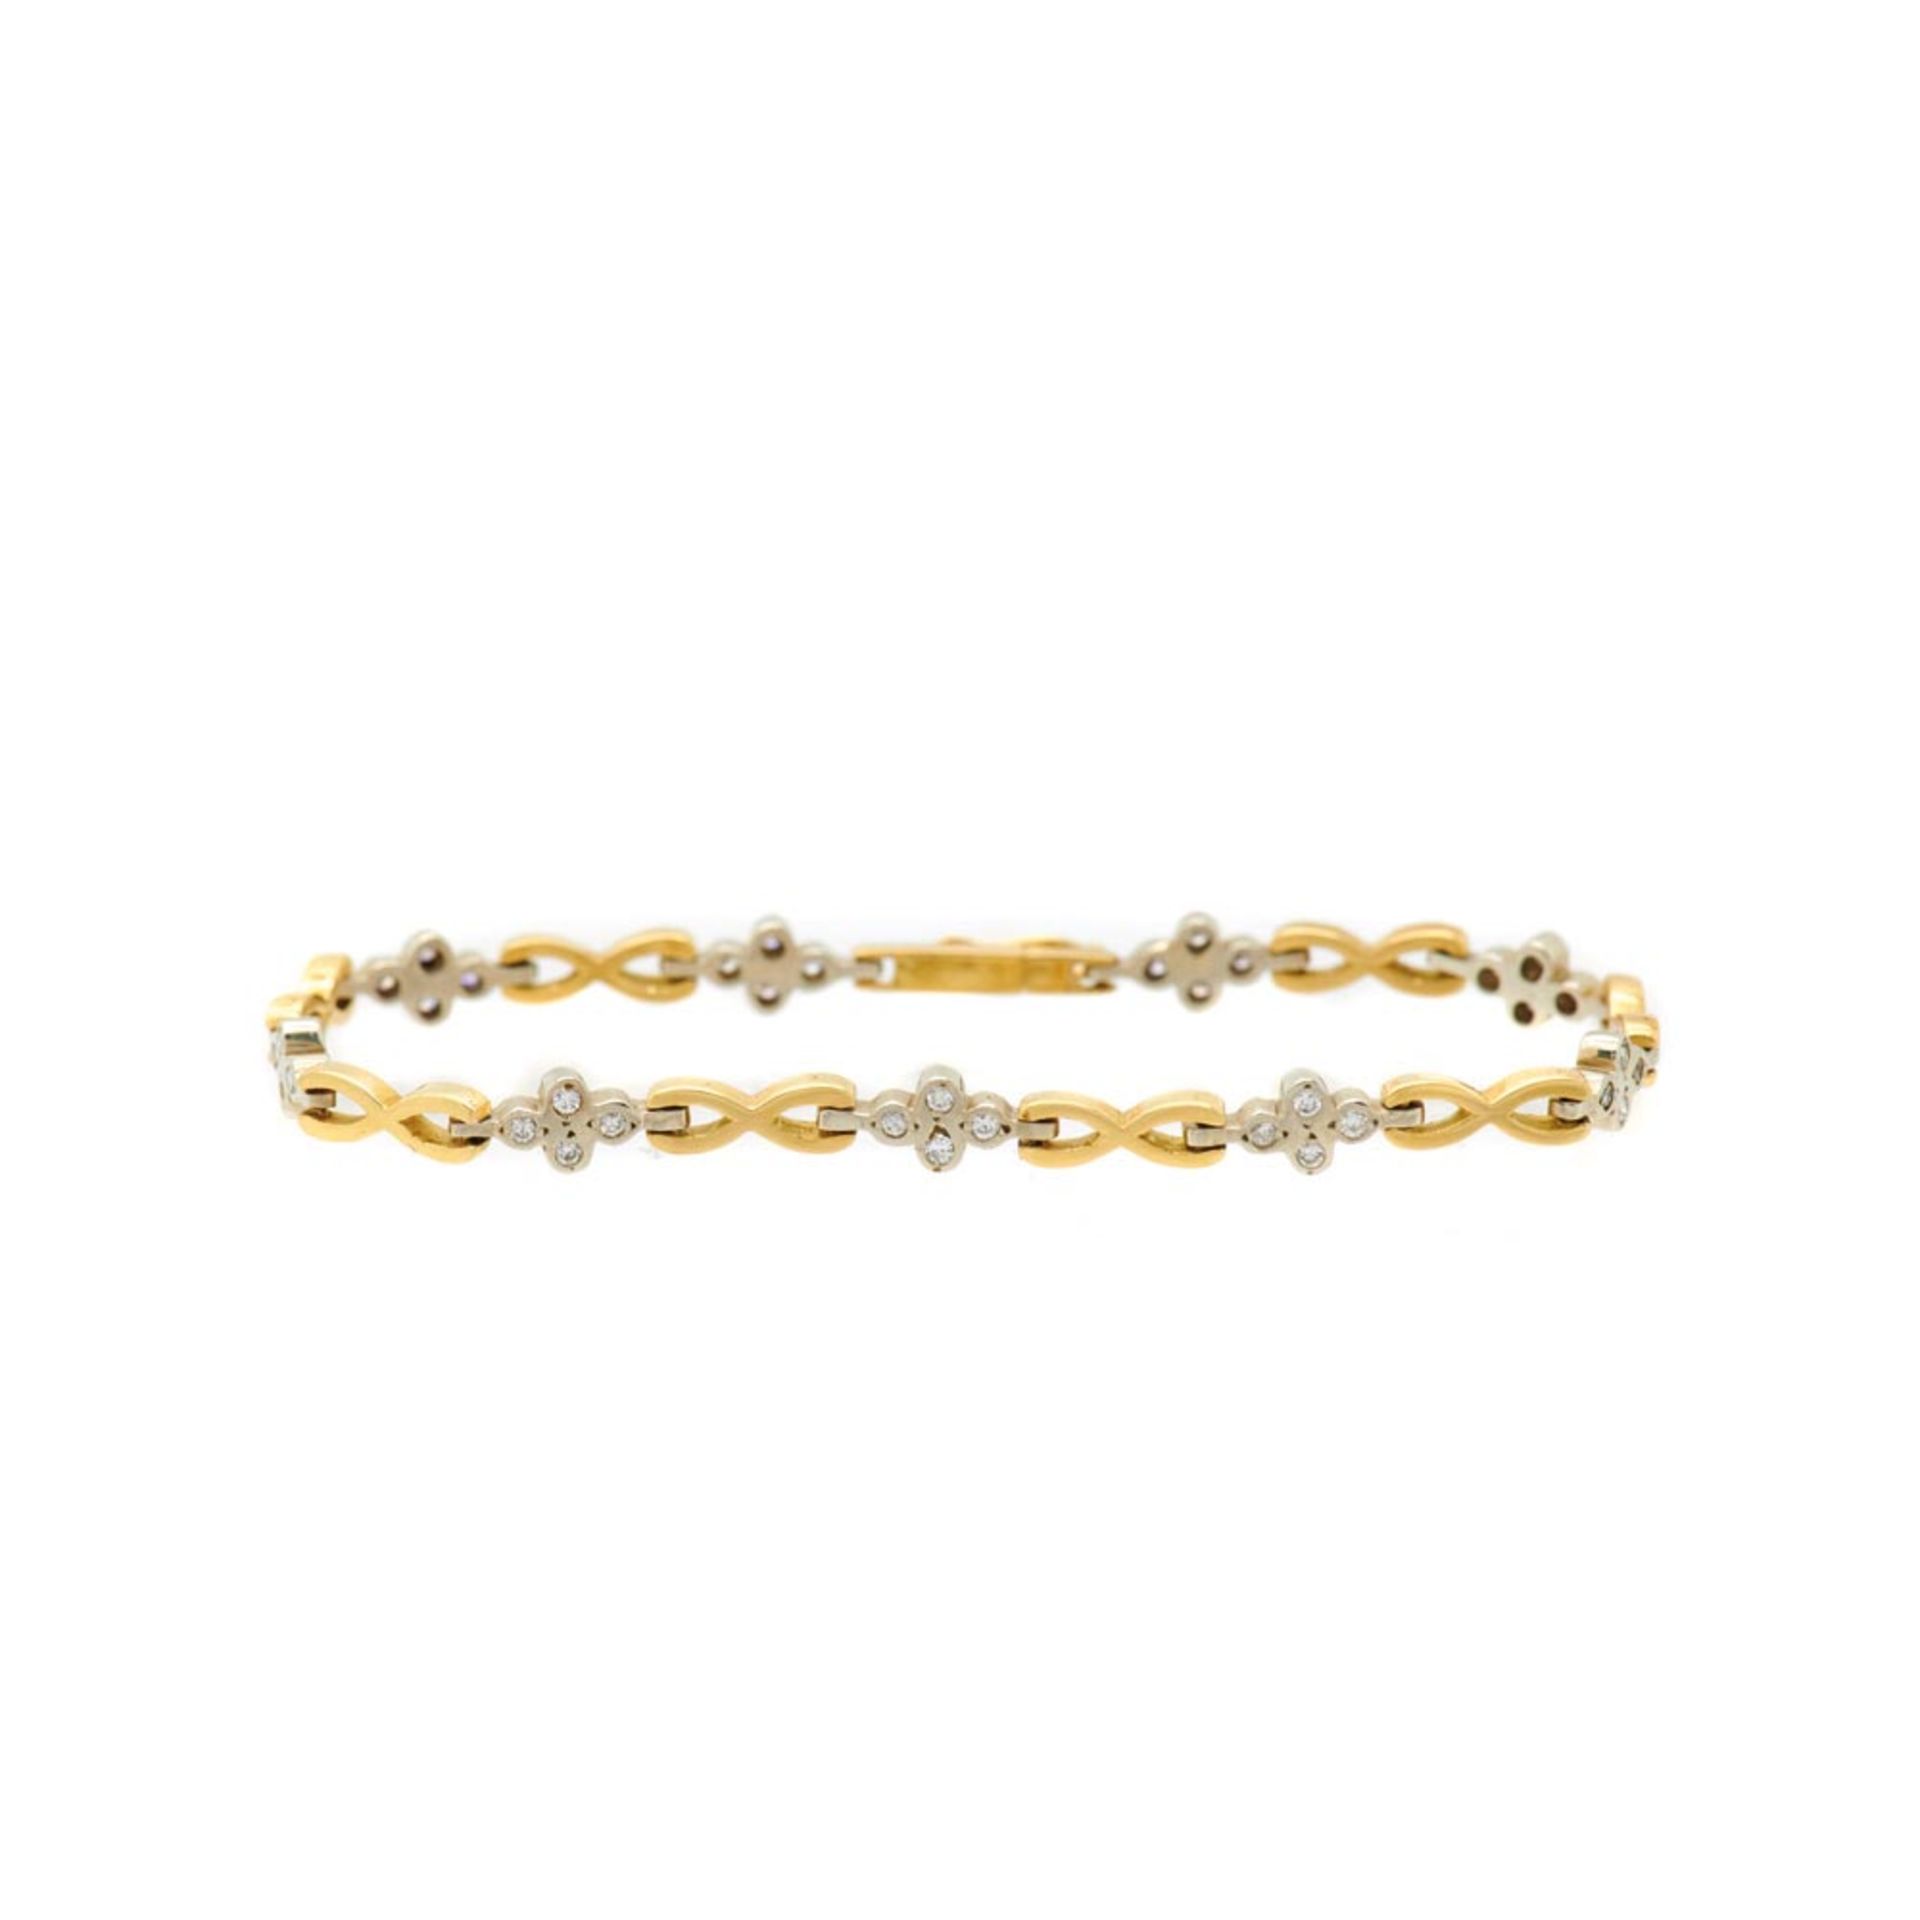 Pulsera en oro bicolor con diamantes talla brillante engastados en chatón. Peso diamantes: 0,45